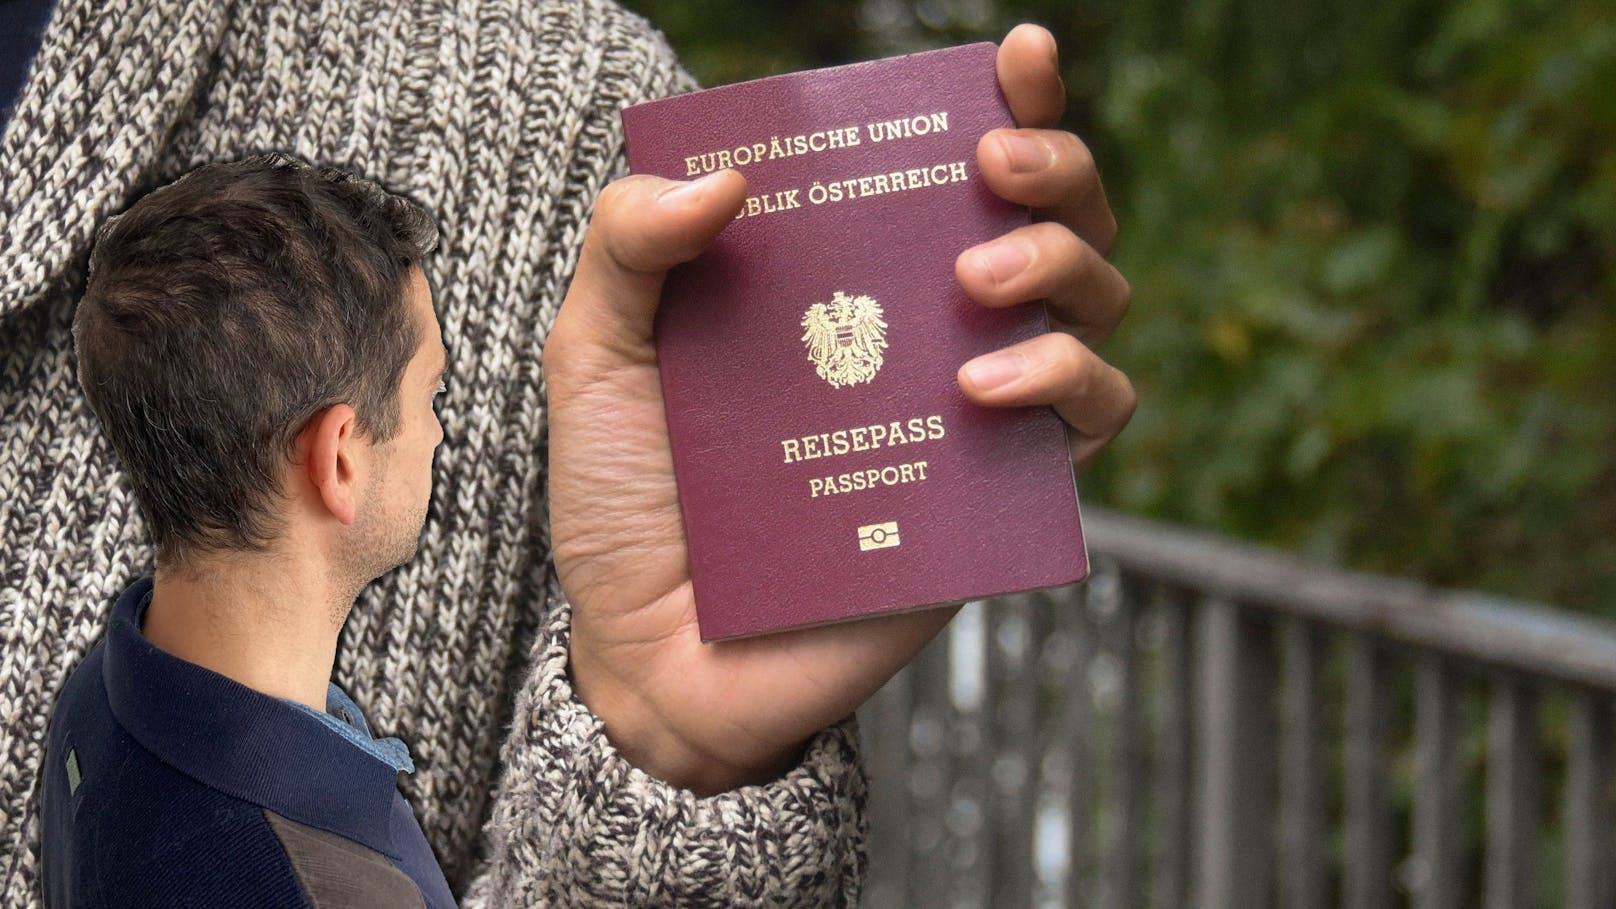 Wiener soll 2 Jahre für Pass-Antrag bei der MA35 warten